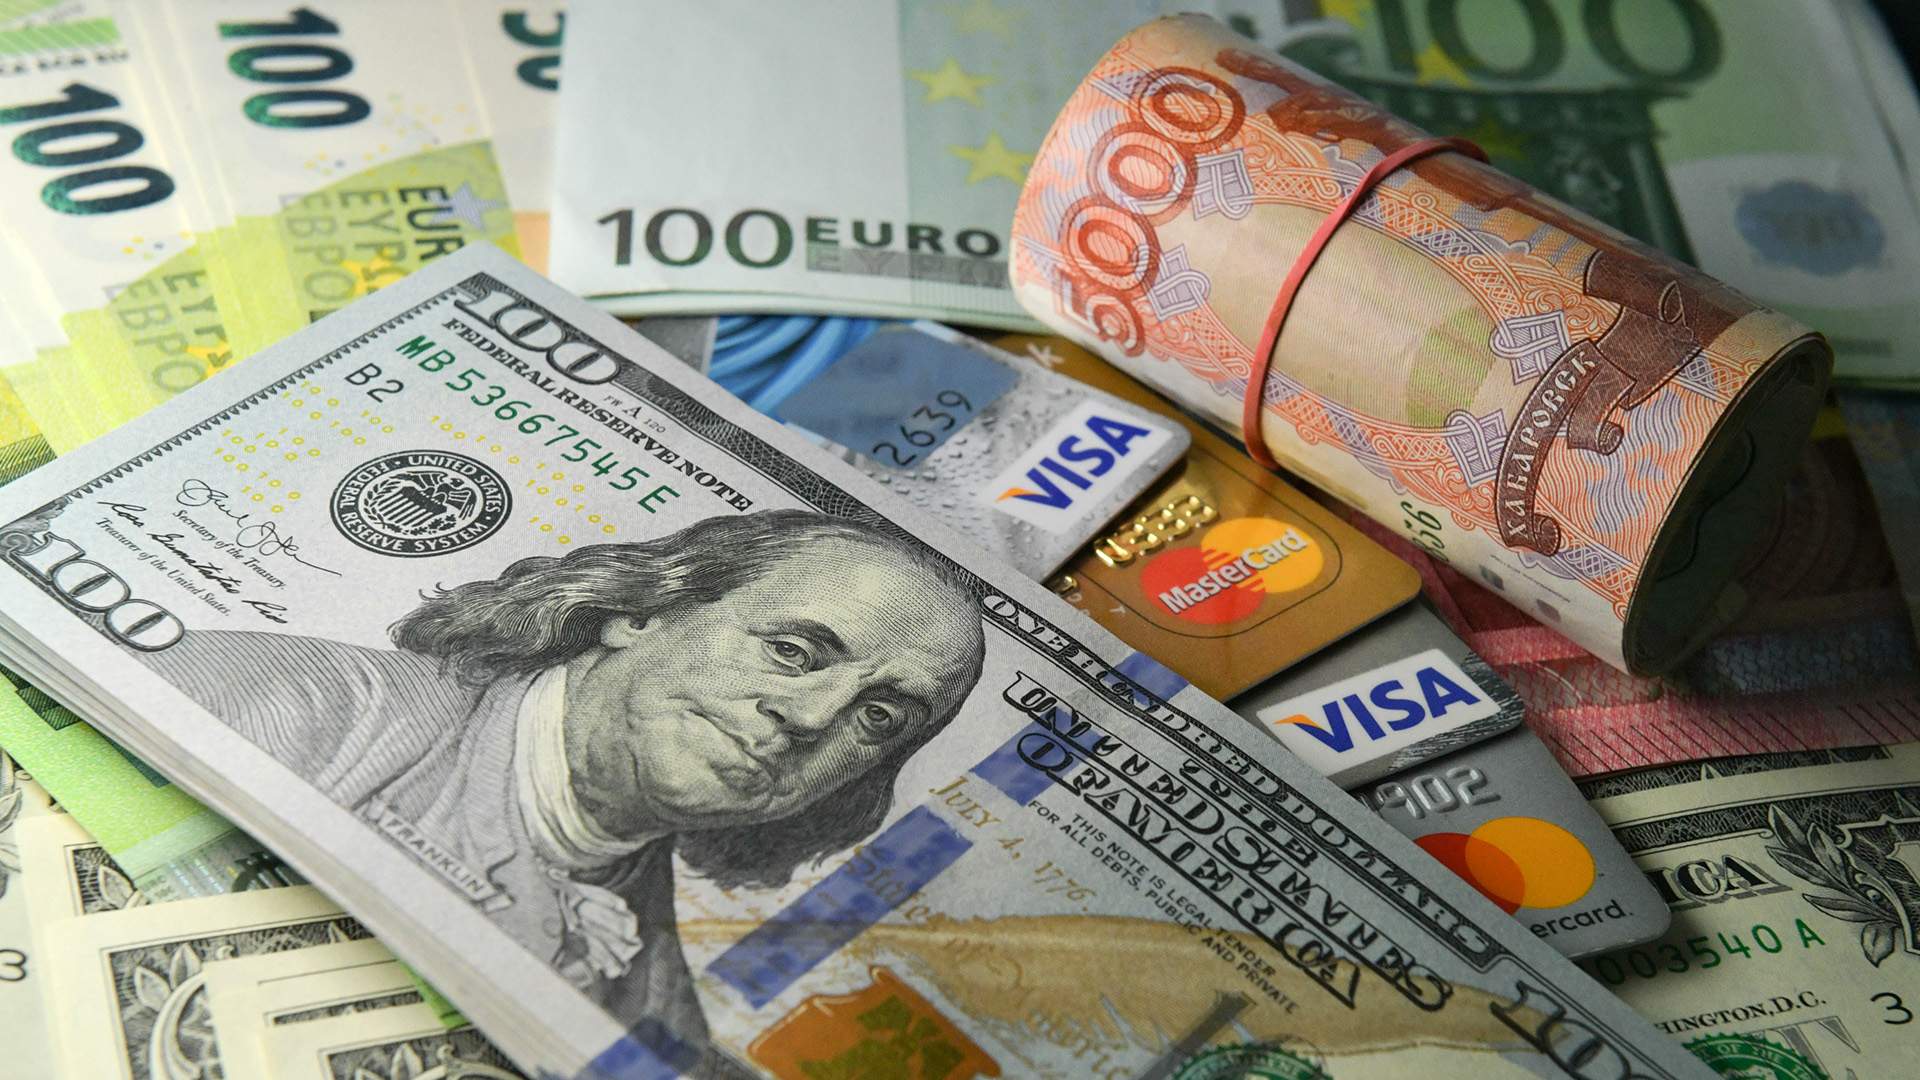 Лучший курс обмена валюты с белгороде цена биткоина когда появился он только